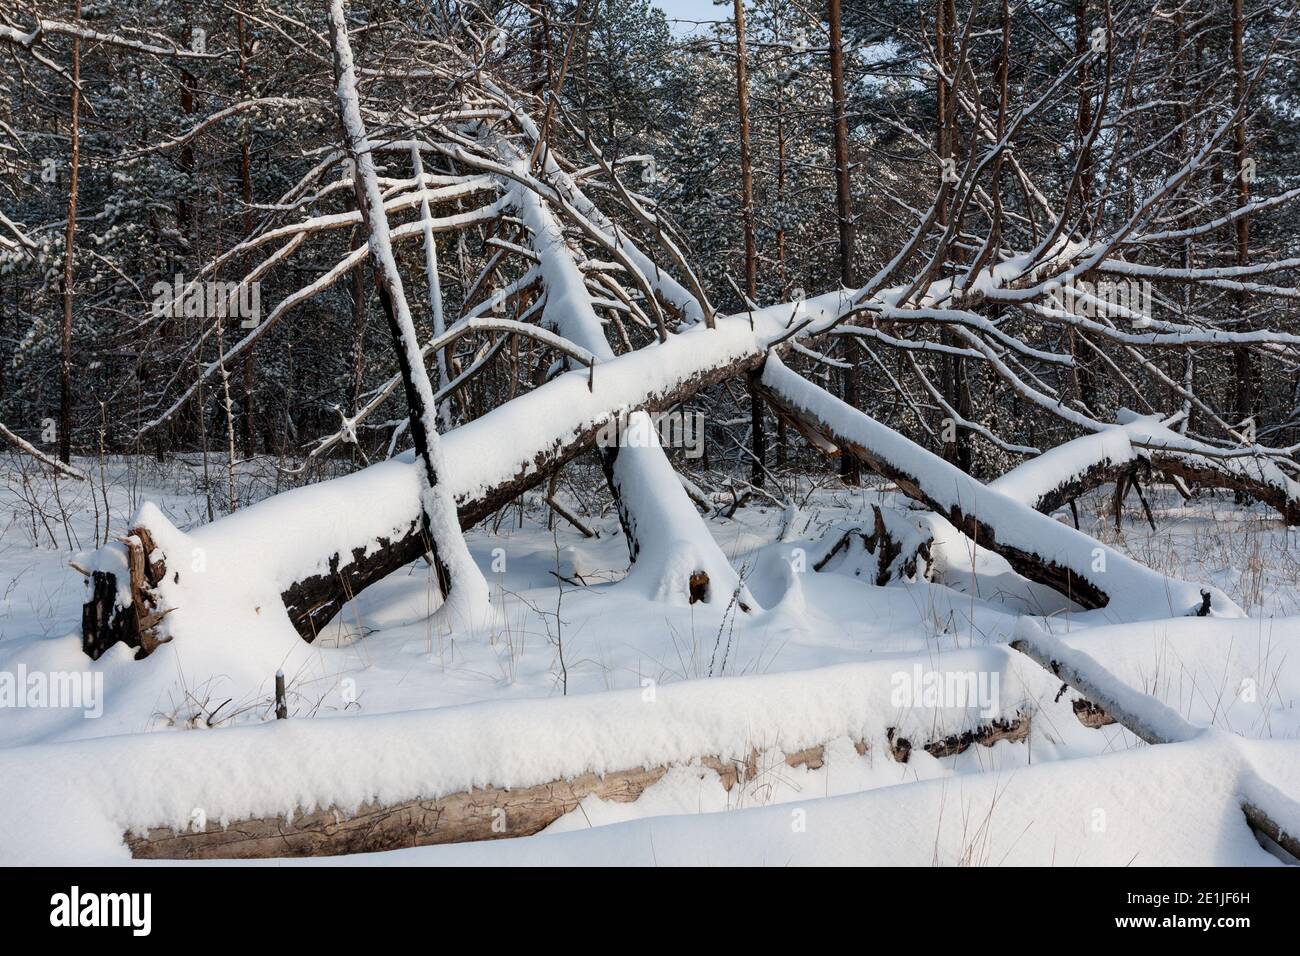 Landscape witj windbreak trees in a snowy winter pine forest Stock Photo